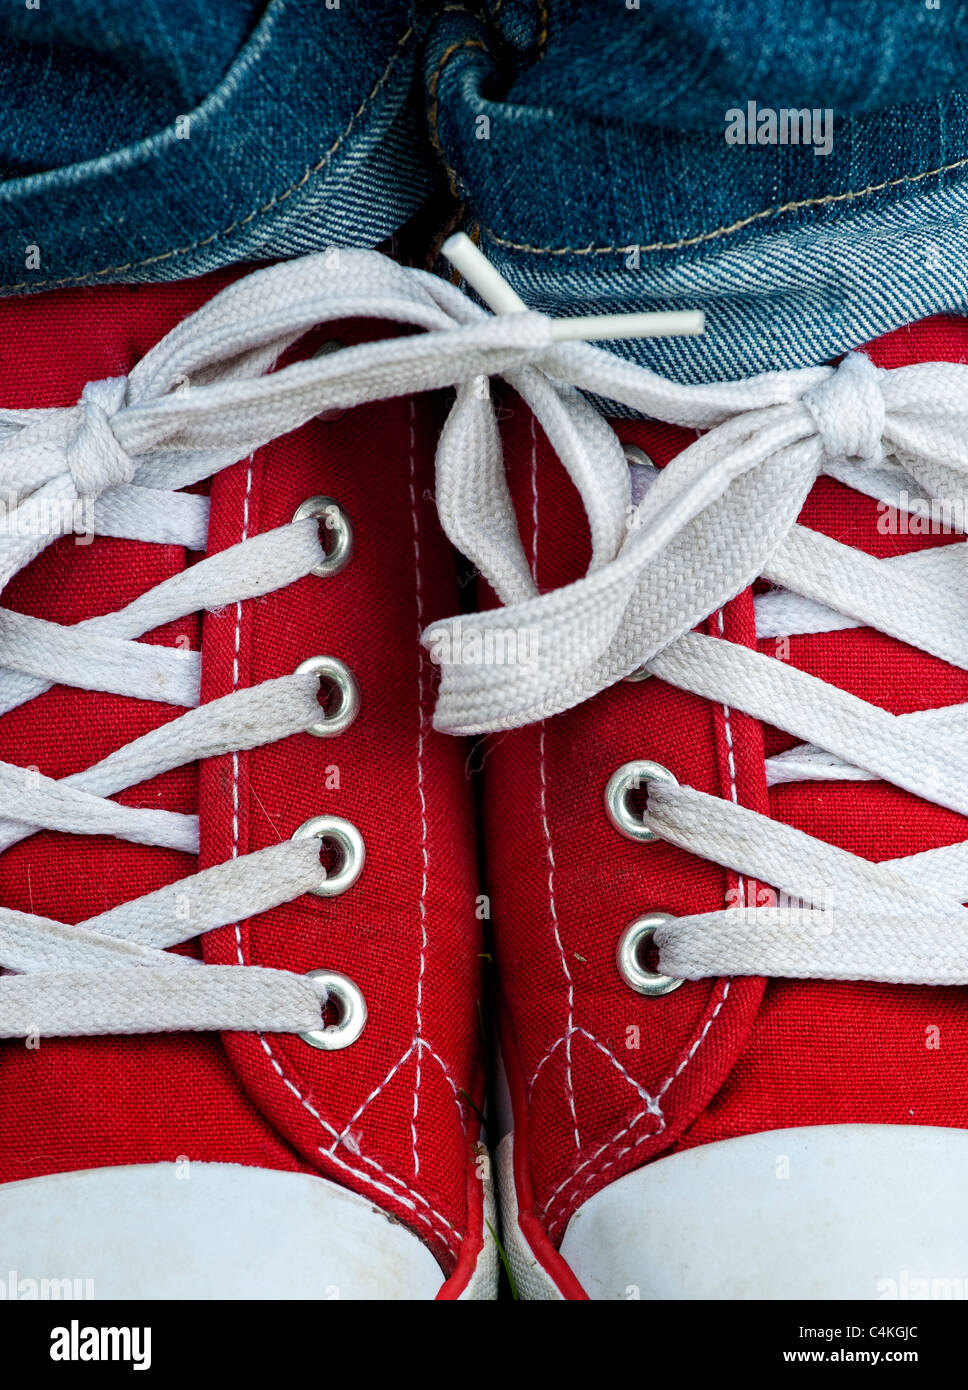 Chaussures de sport rouges Banque D'Images